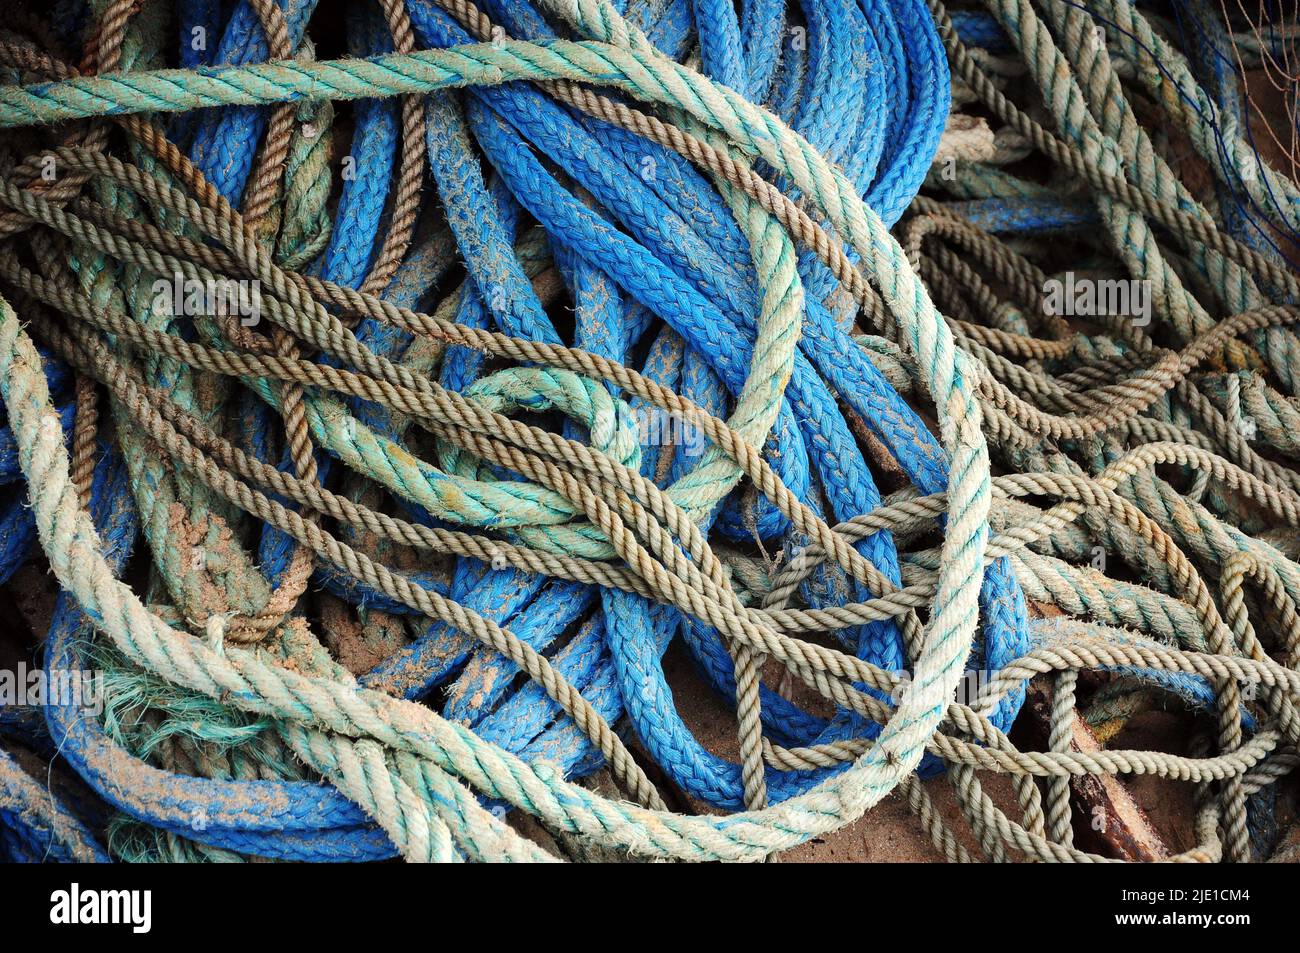 ropes used by fishermen in Fisherman's Beach, Punta del Diablo, Rocha, Uruguay. Stock Photo